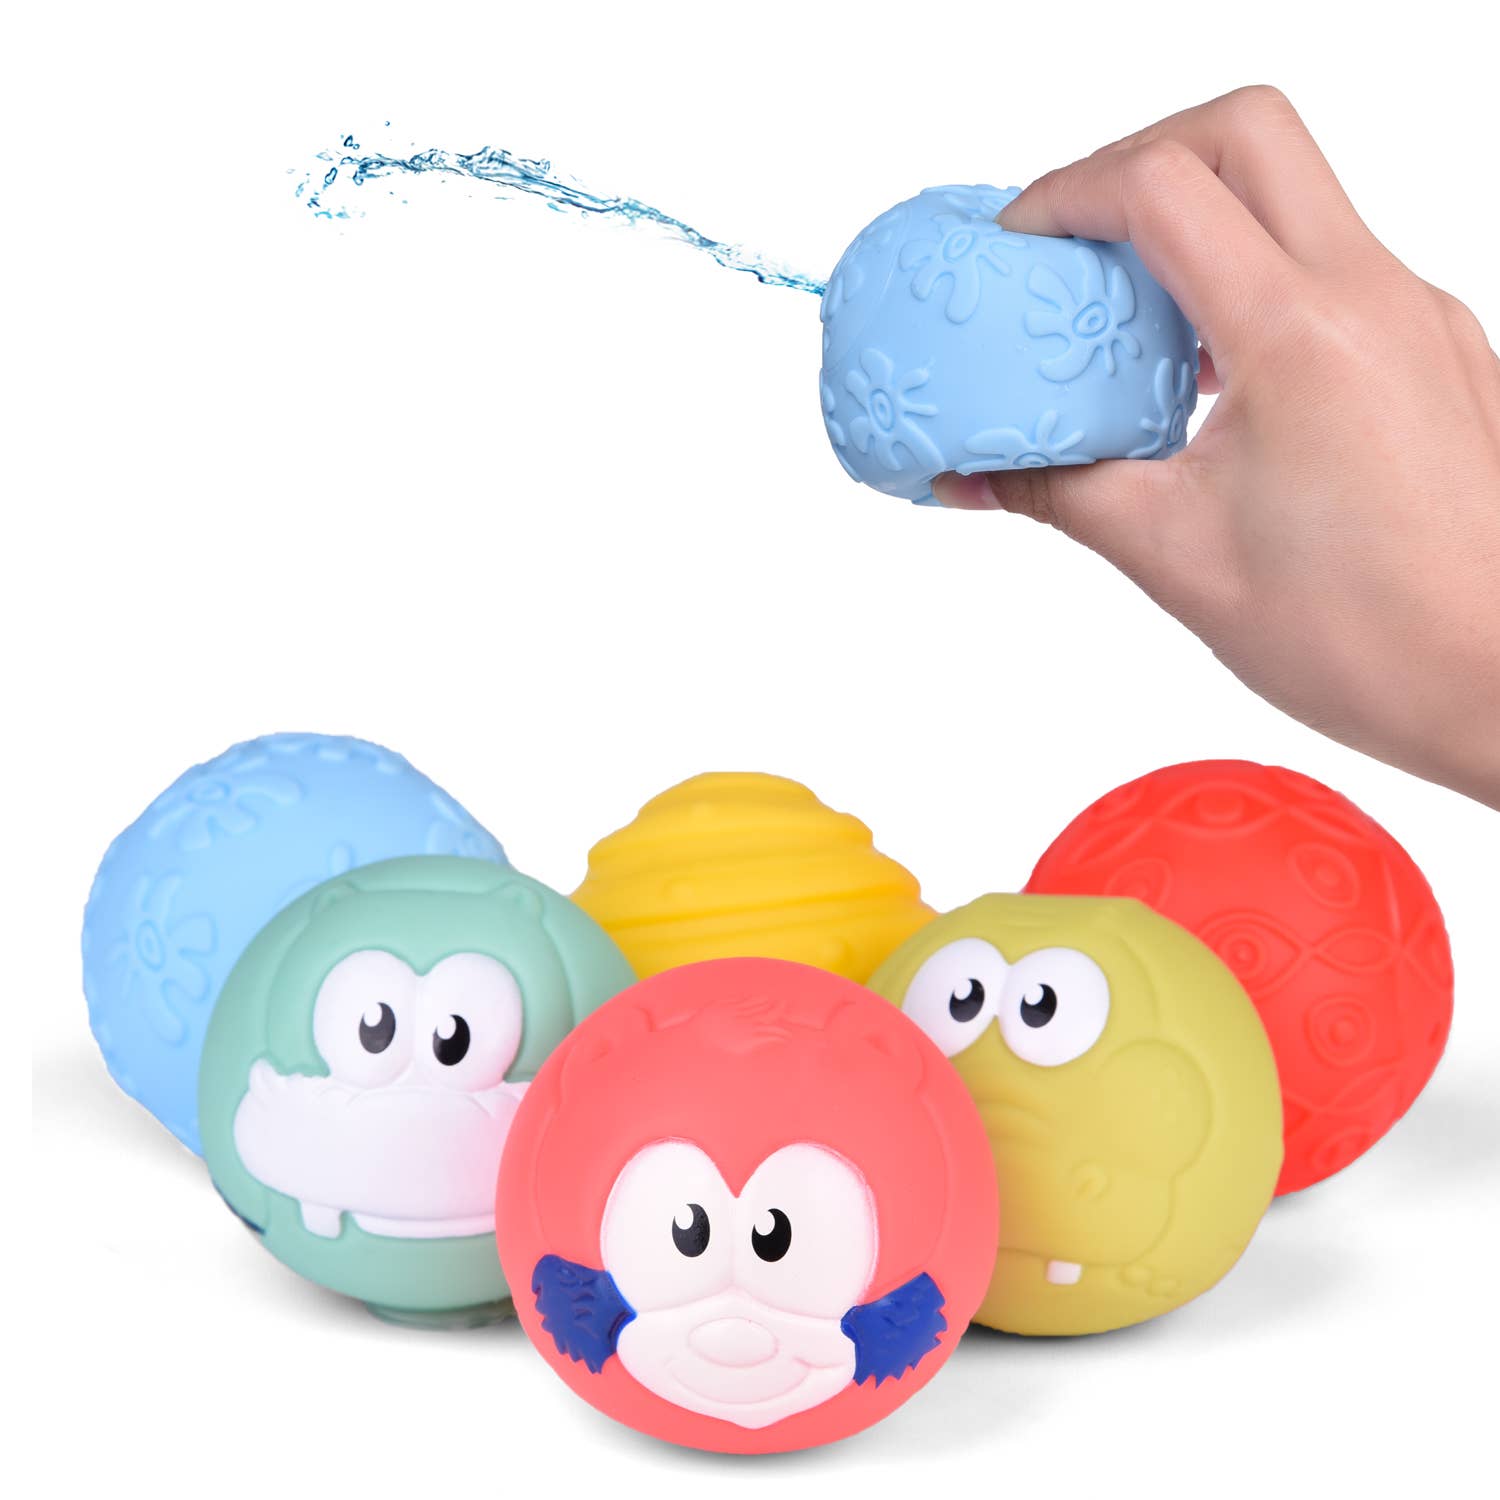 Paquete de juguetes de baño para niños pequeños